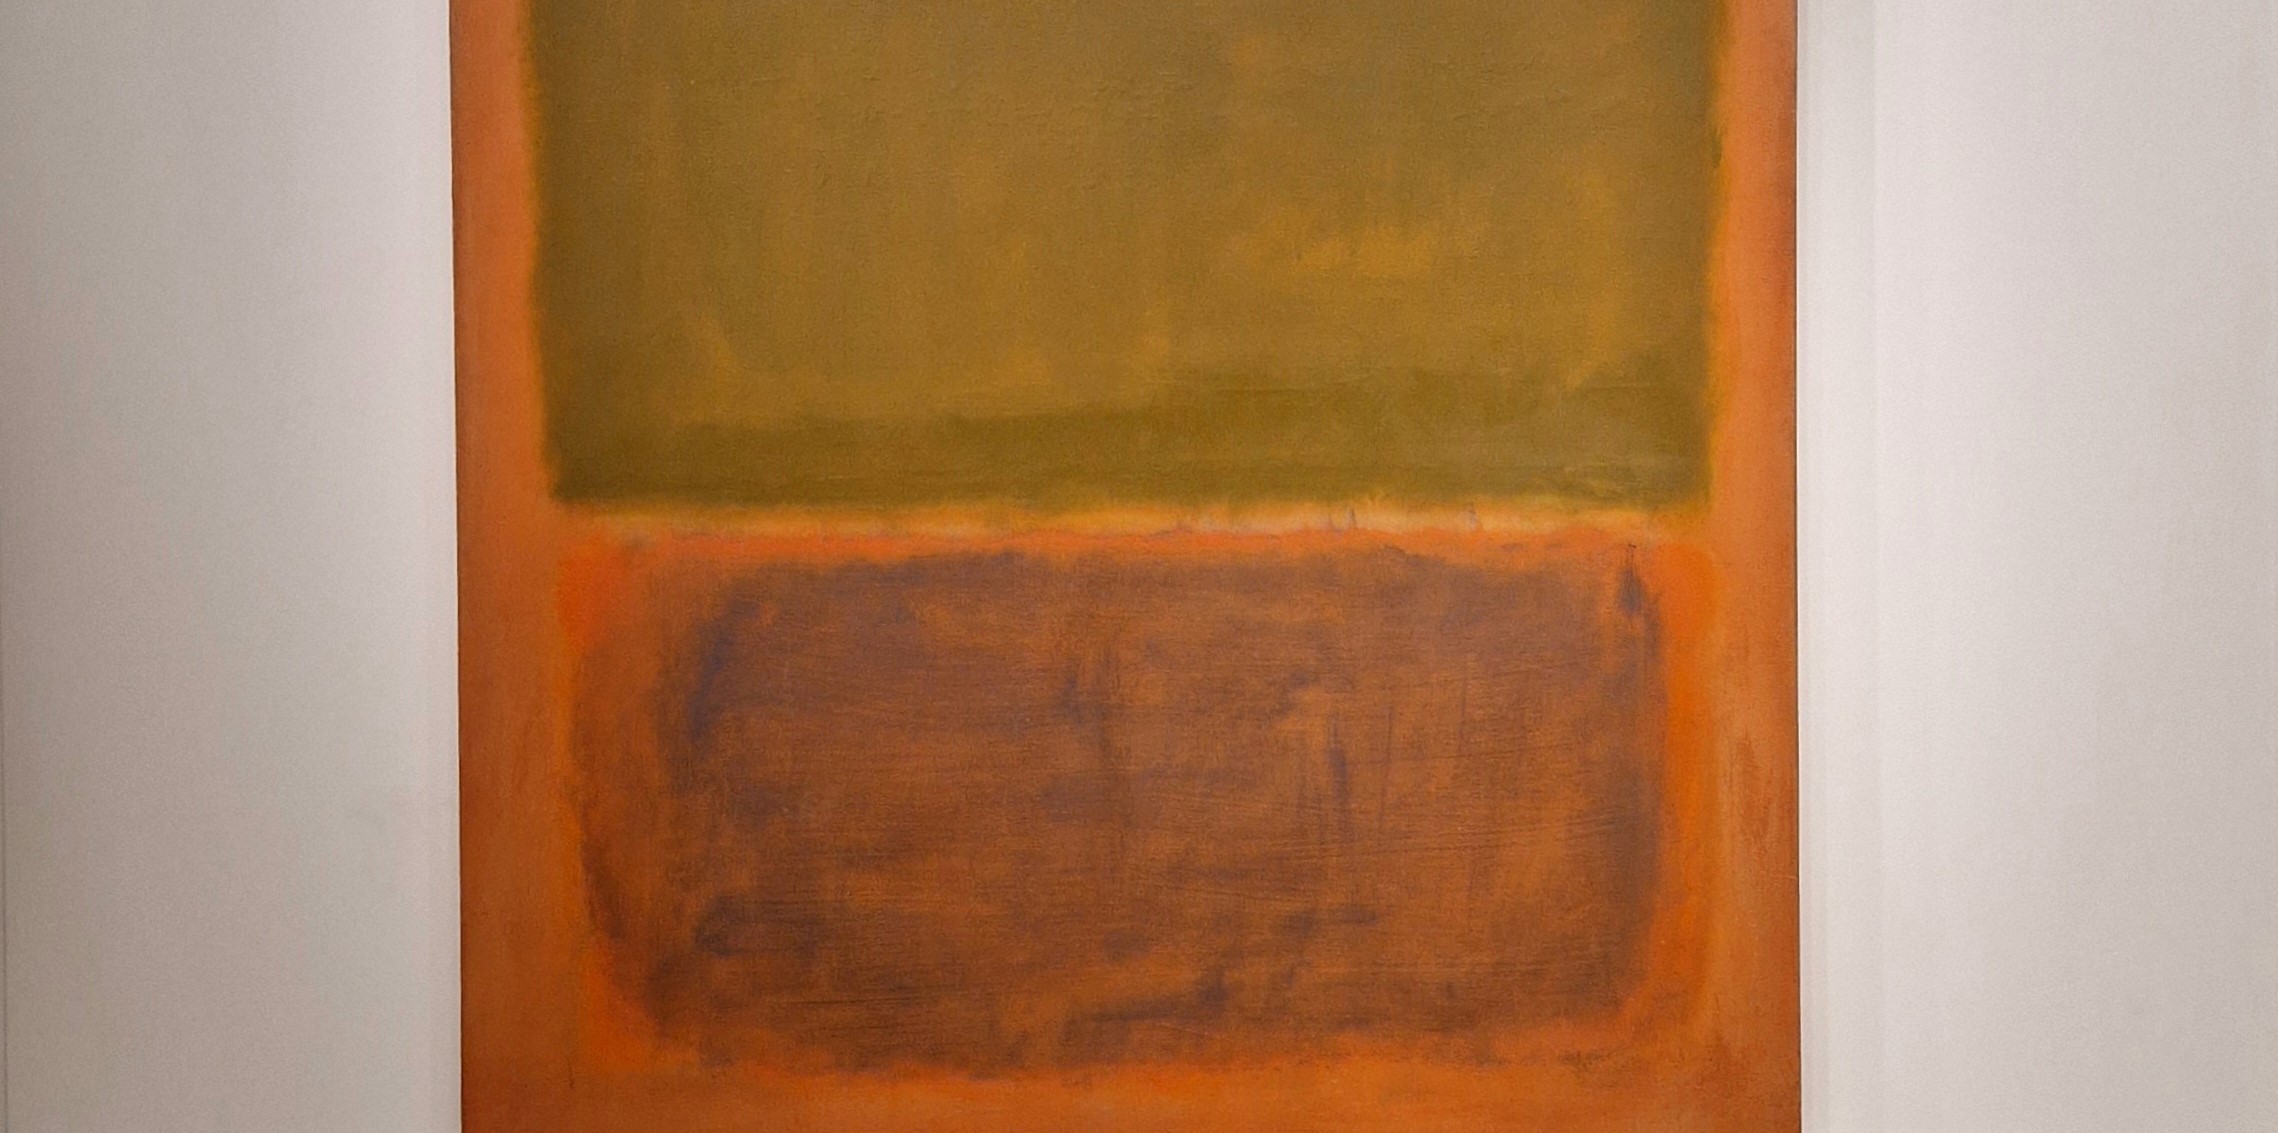 40 milioni di dollari: ecco il Mark Rothko color oliva su rosso preso d’assalto a Paris+